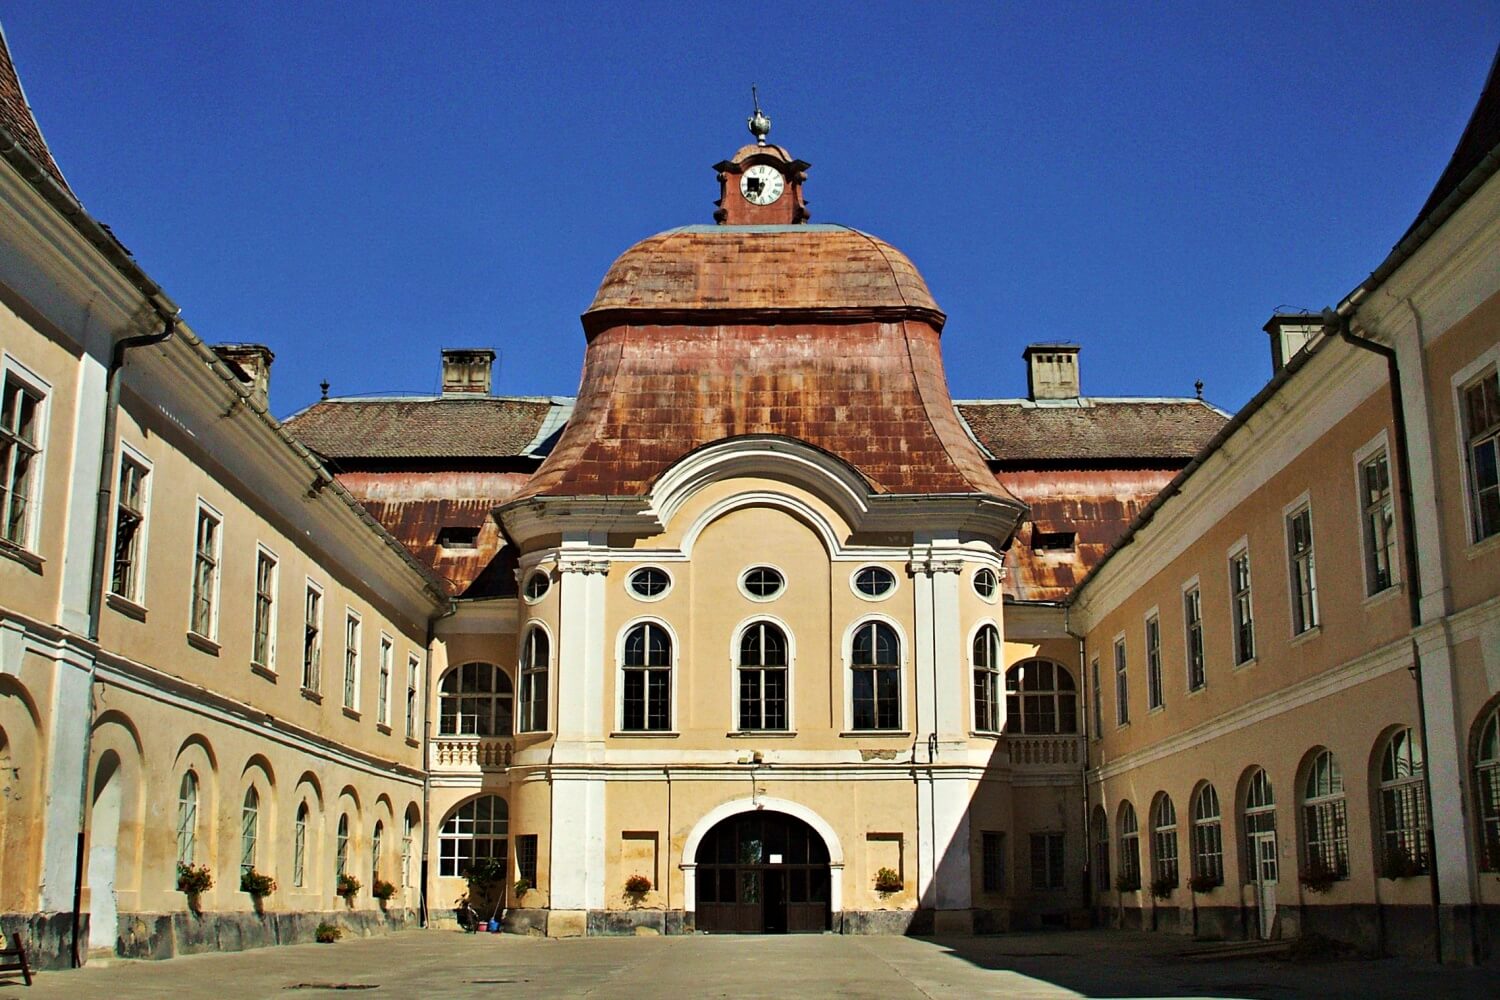 Teleki Castle in Gernyeszeg